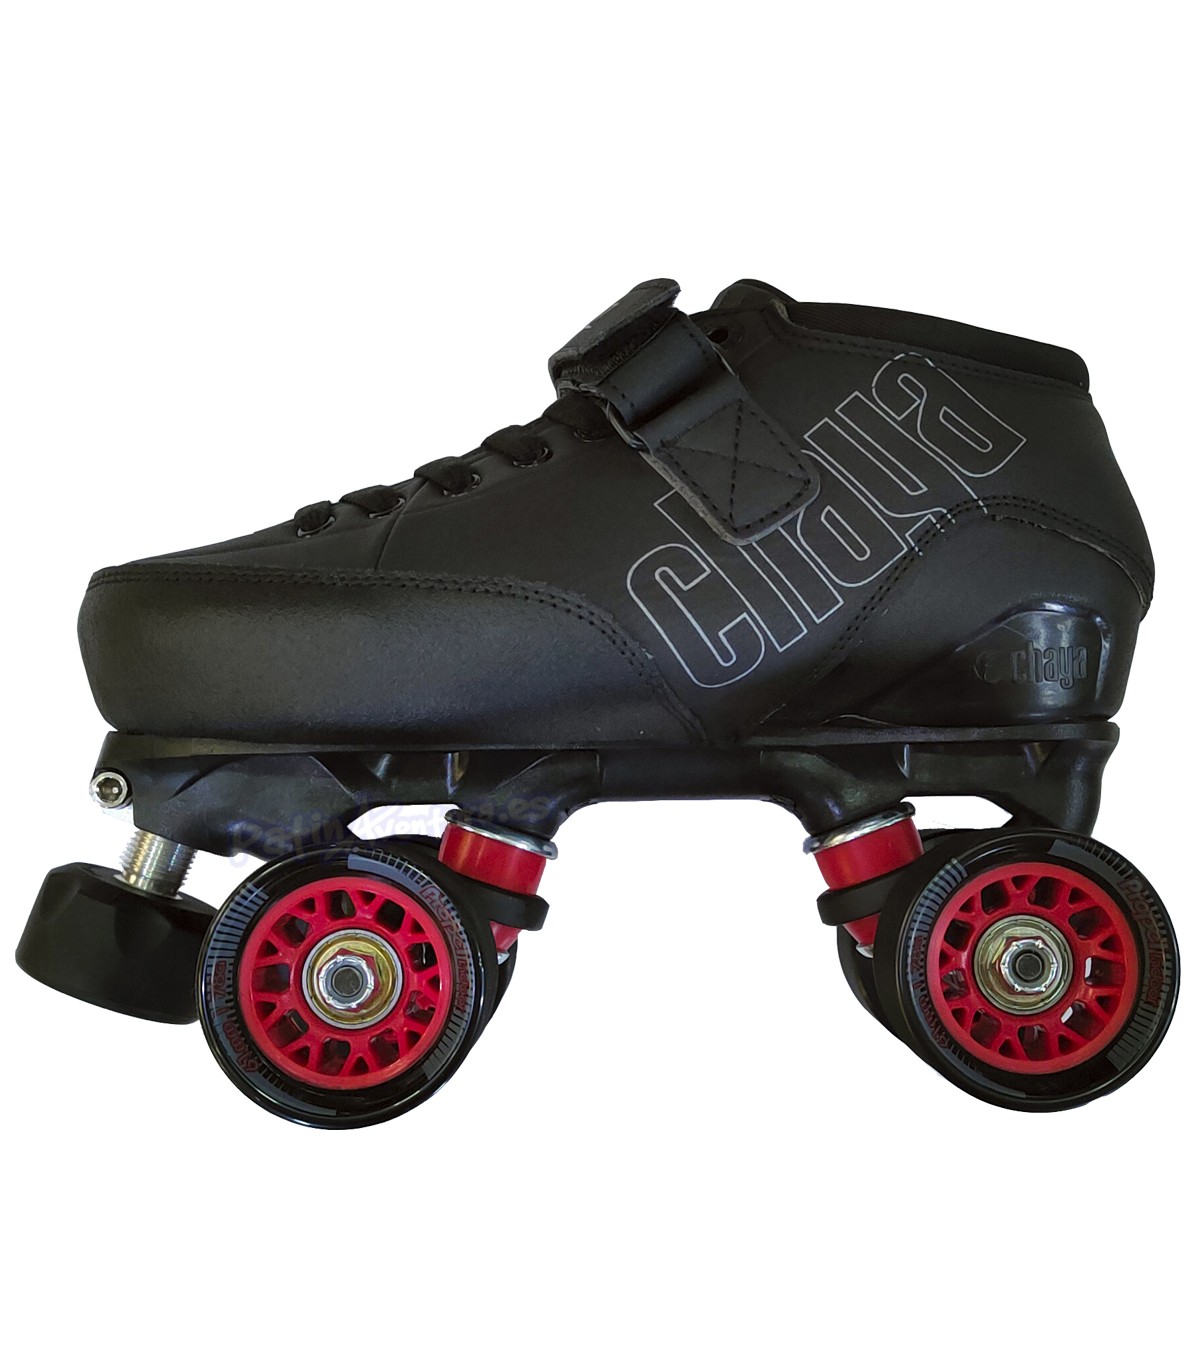 Quad de 4 ruedas: patines tradicionales para usos urbanos actuales (5)